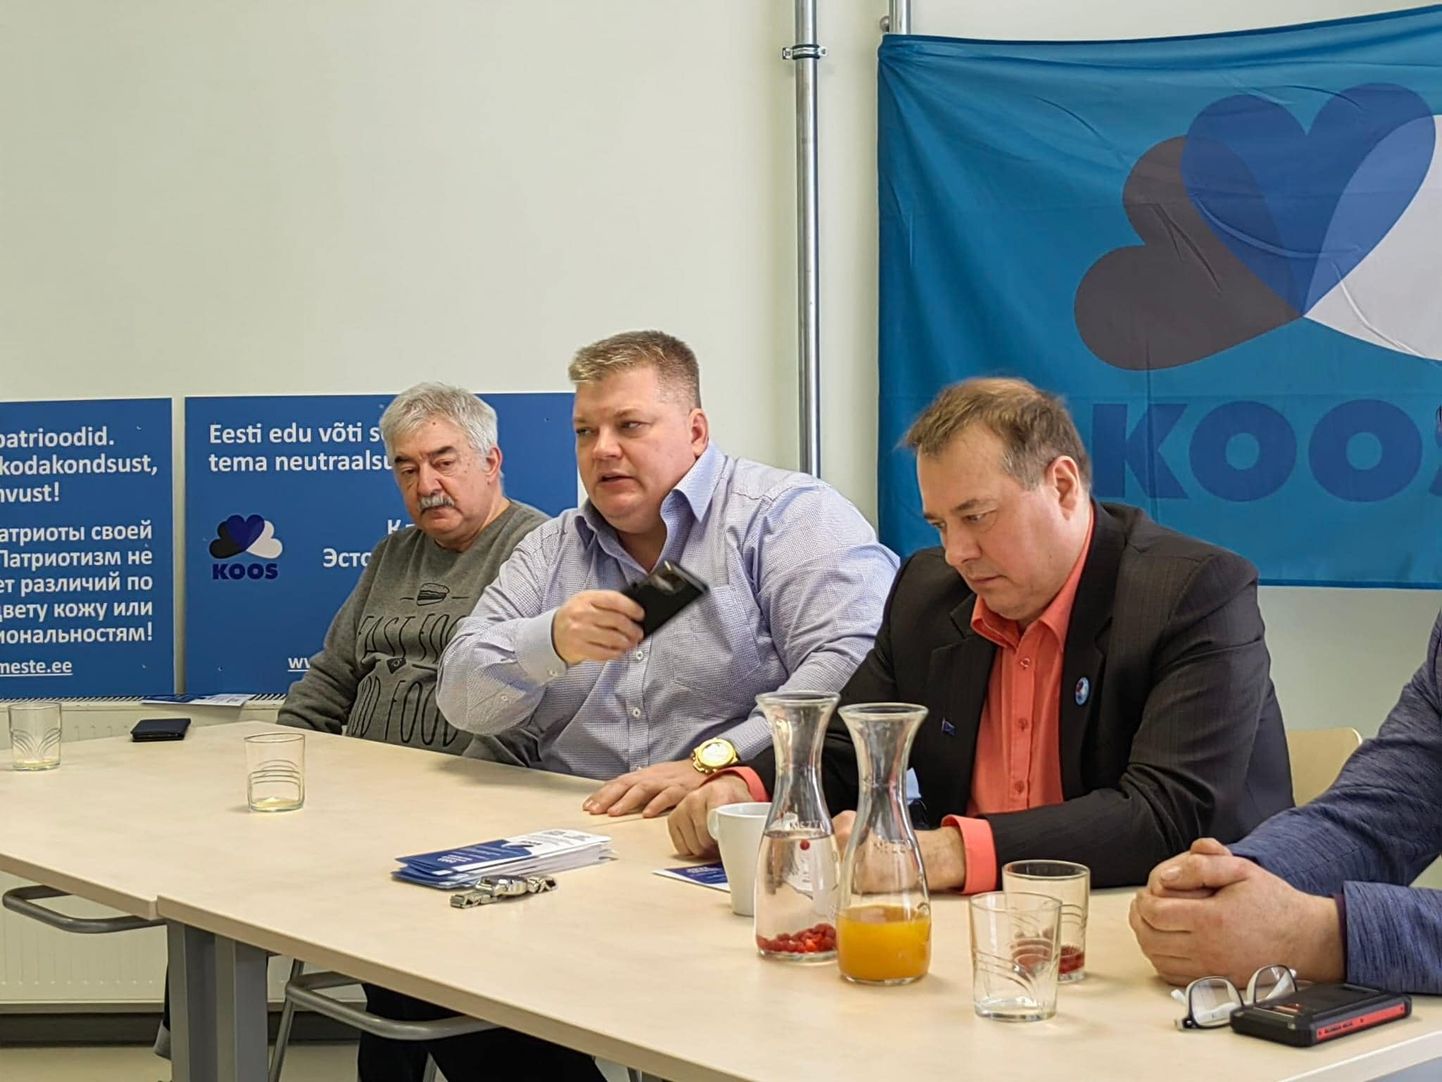 Председатель Объединенной левой партии Эстонии Игорь Розенфельд (слева) и руководители Koos Олег Иванов (в центре) и Айво Петерсон (справа).